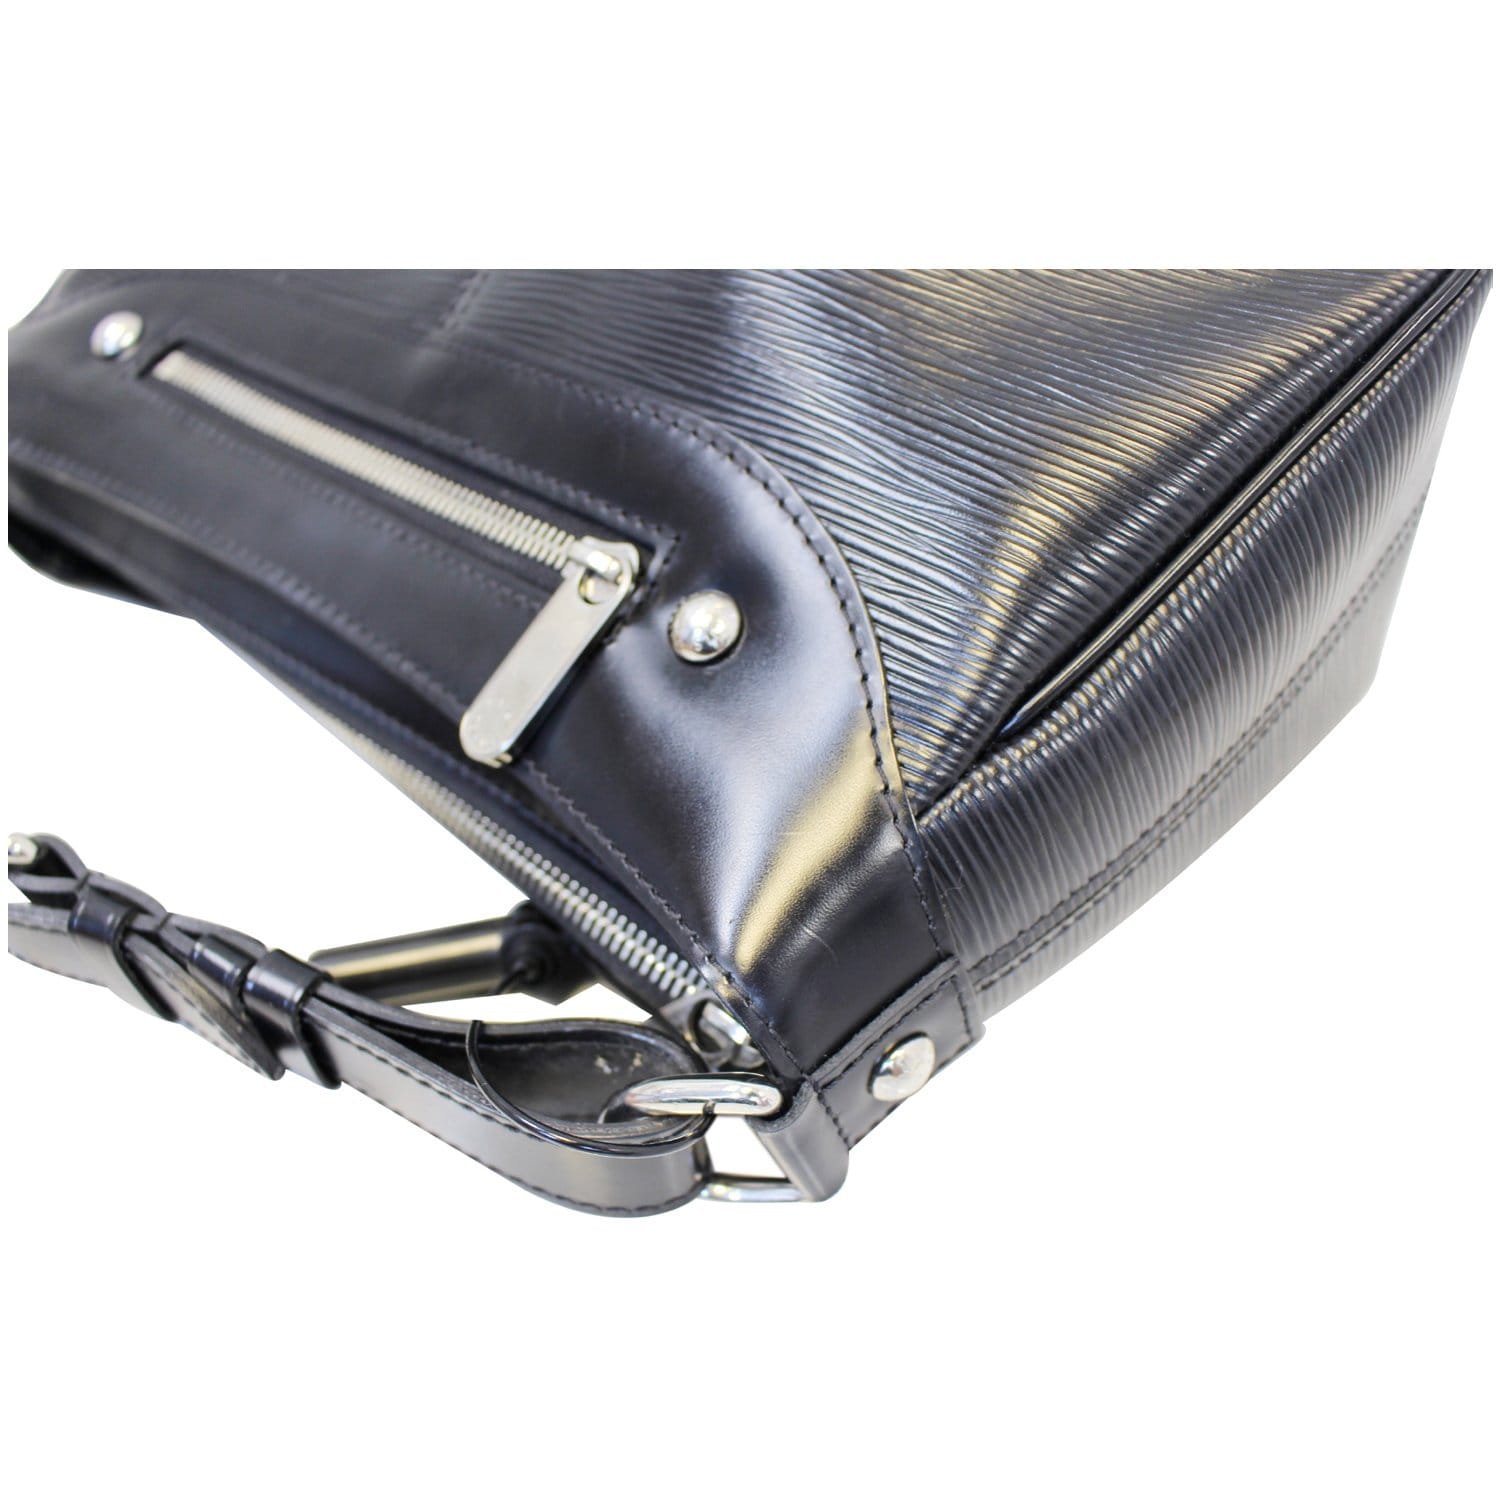 LOUIS VUITTON Turenne PM Epi Leather Shoulder Bag Black-US